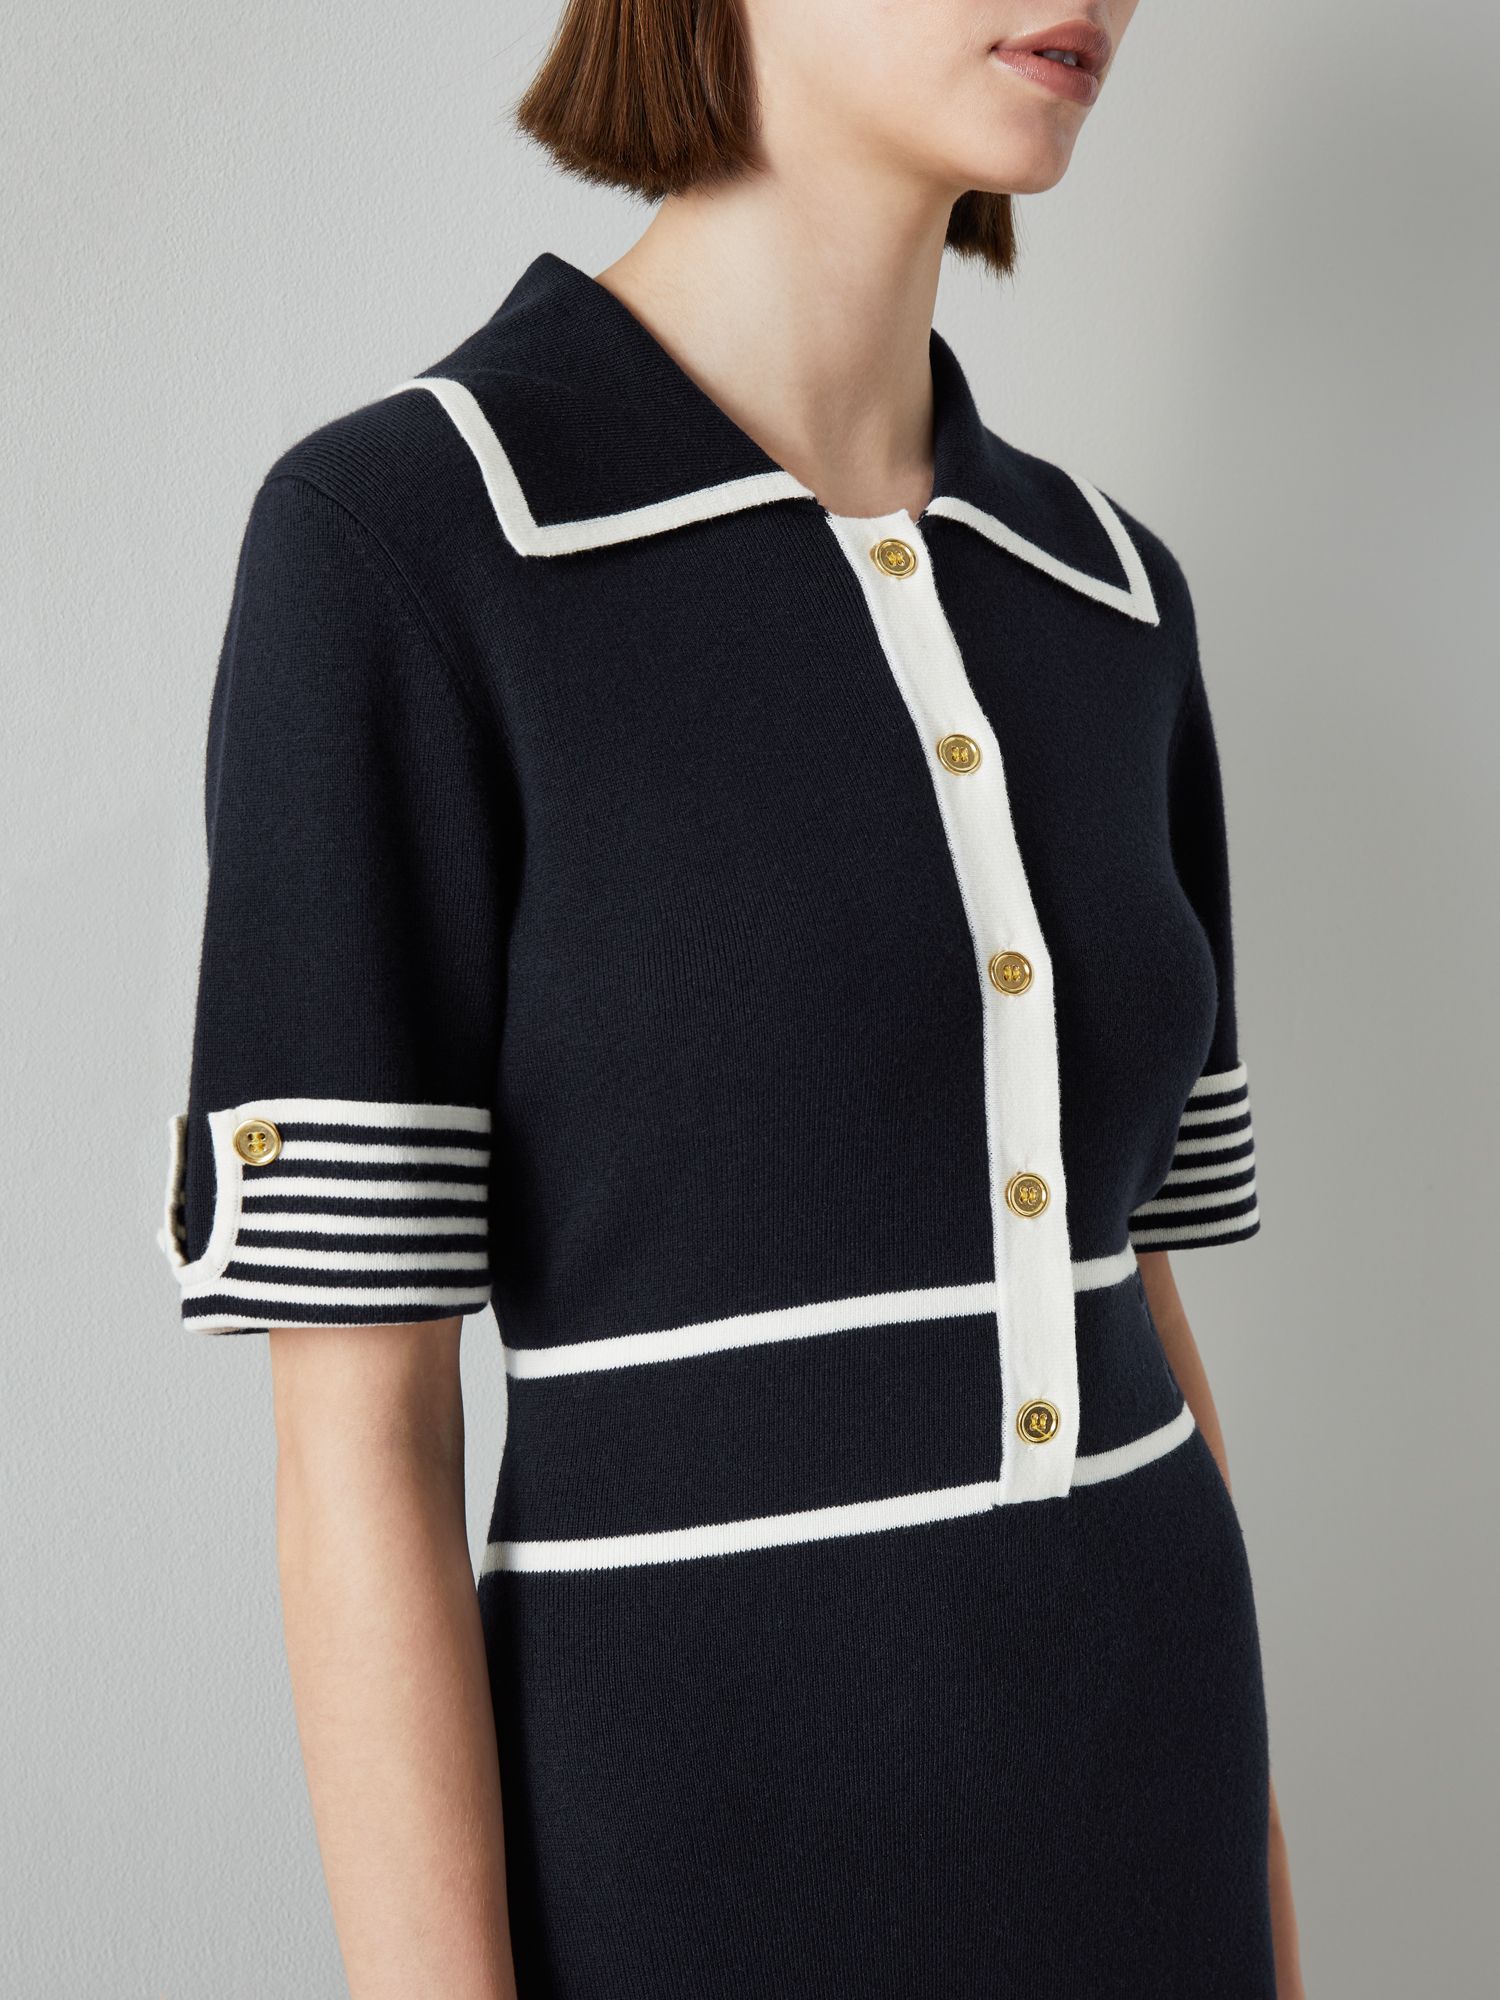 L.K.Bennett Beatrix Cotton Blend Dress, Navy/Cream, XS